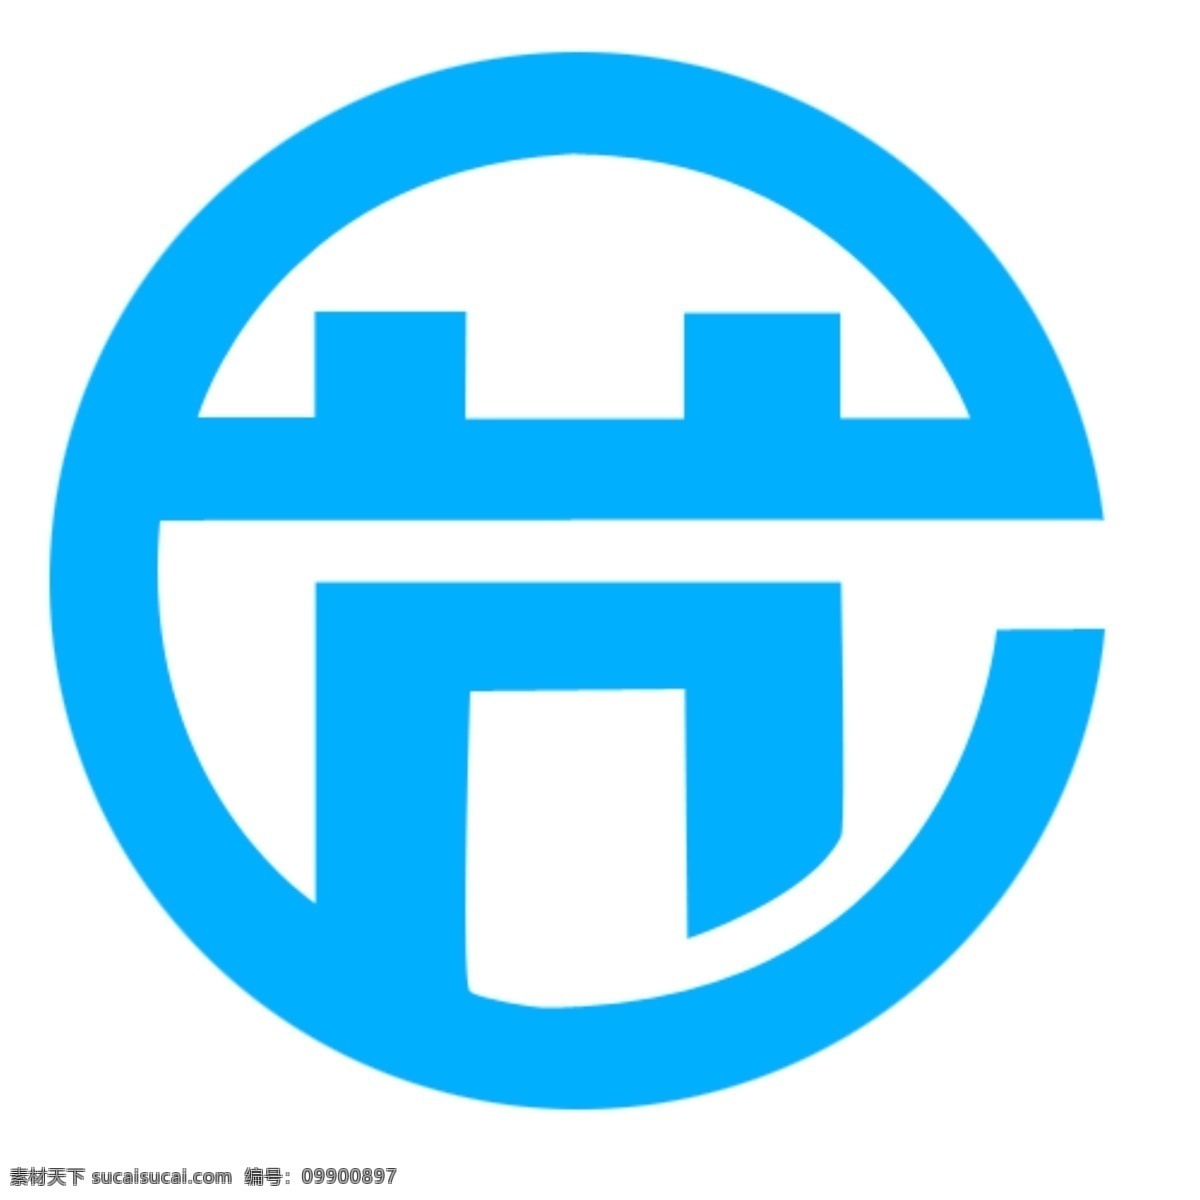 全国 最 畅销 品牌 商品 金桥奖 logo 标示 奖牌 商业logo psd源文件